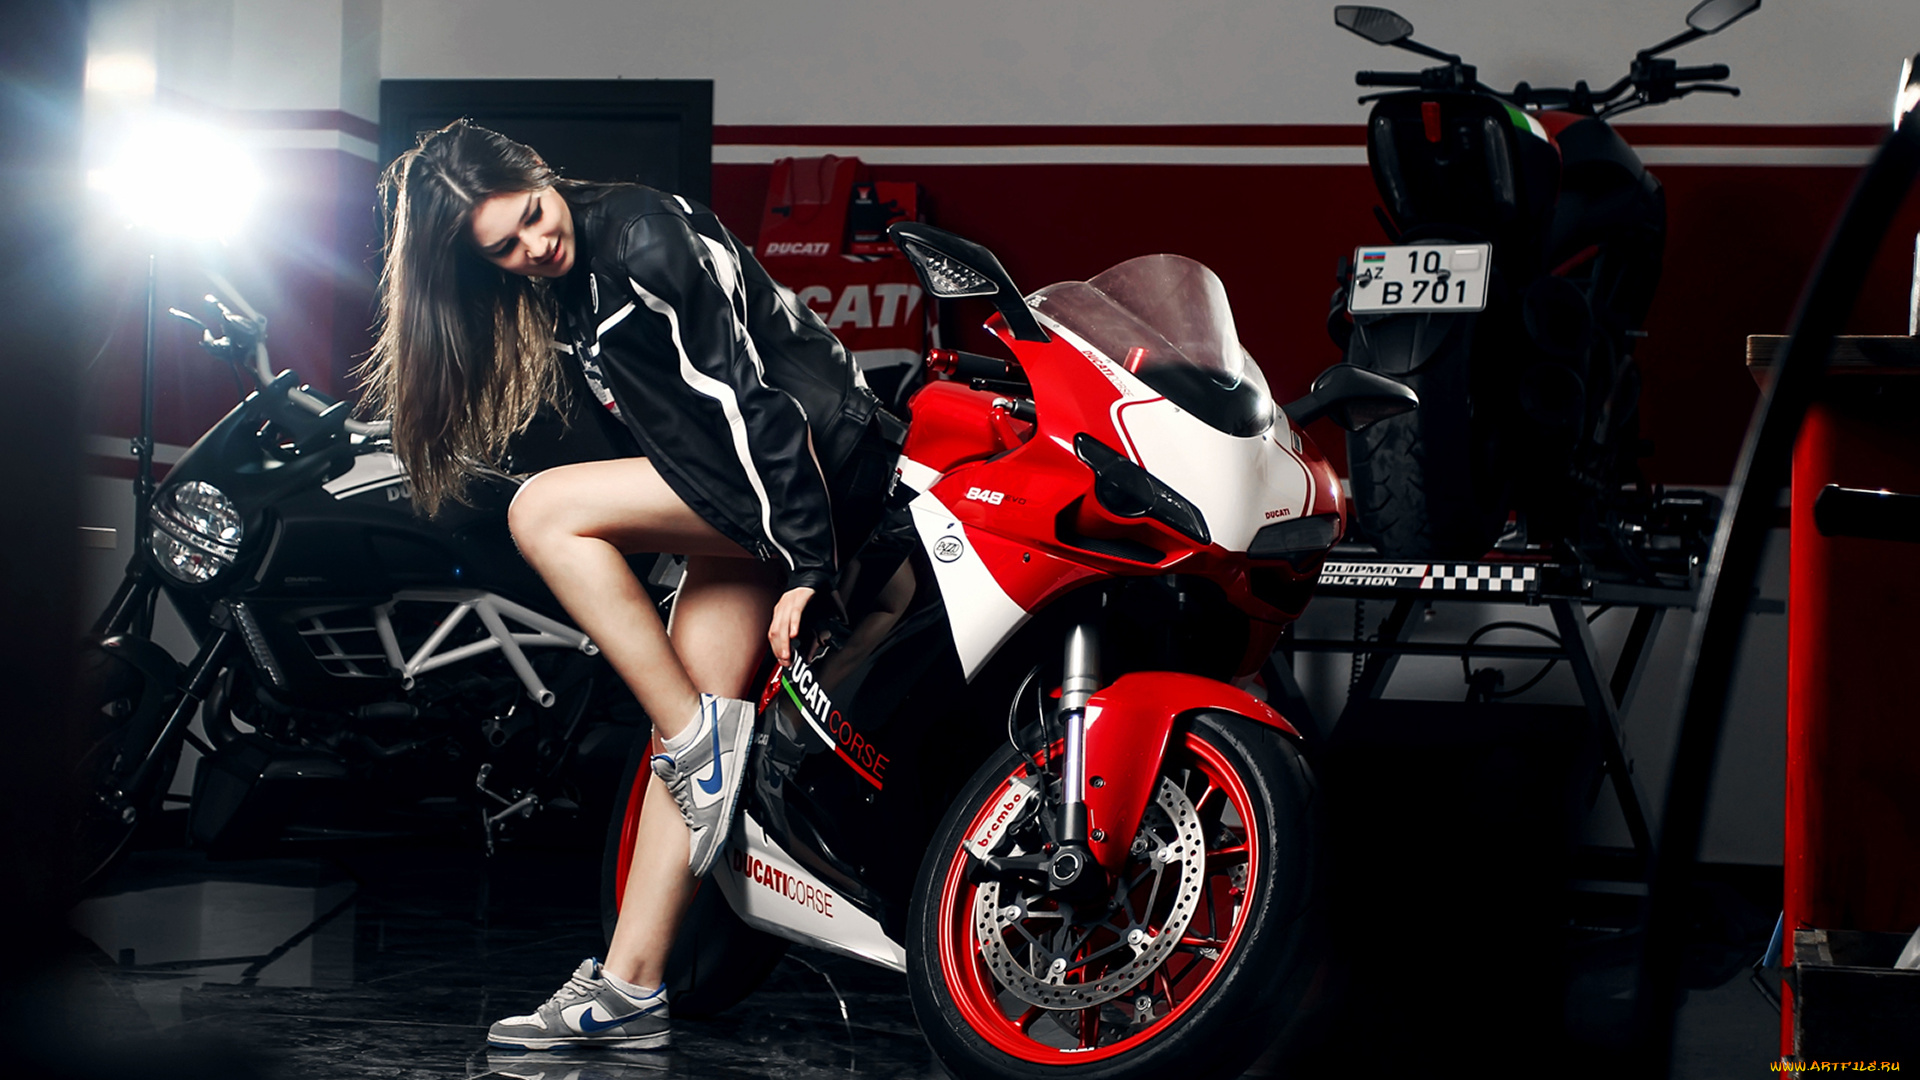 мотоциклы, мото, с, девушкой, мотоцикл, девушка, motocycle, red, nike, shoes, legs, nice, girl, katharina